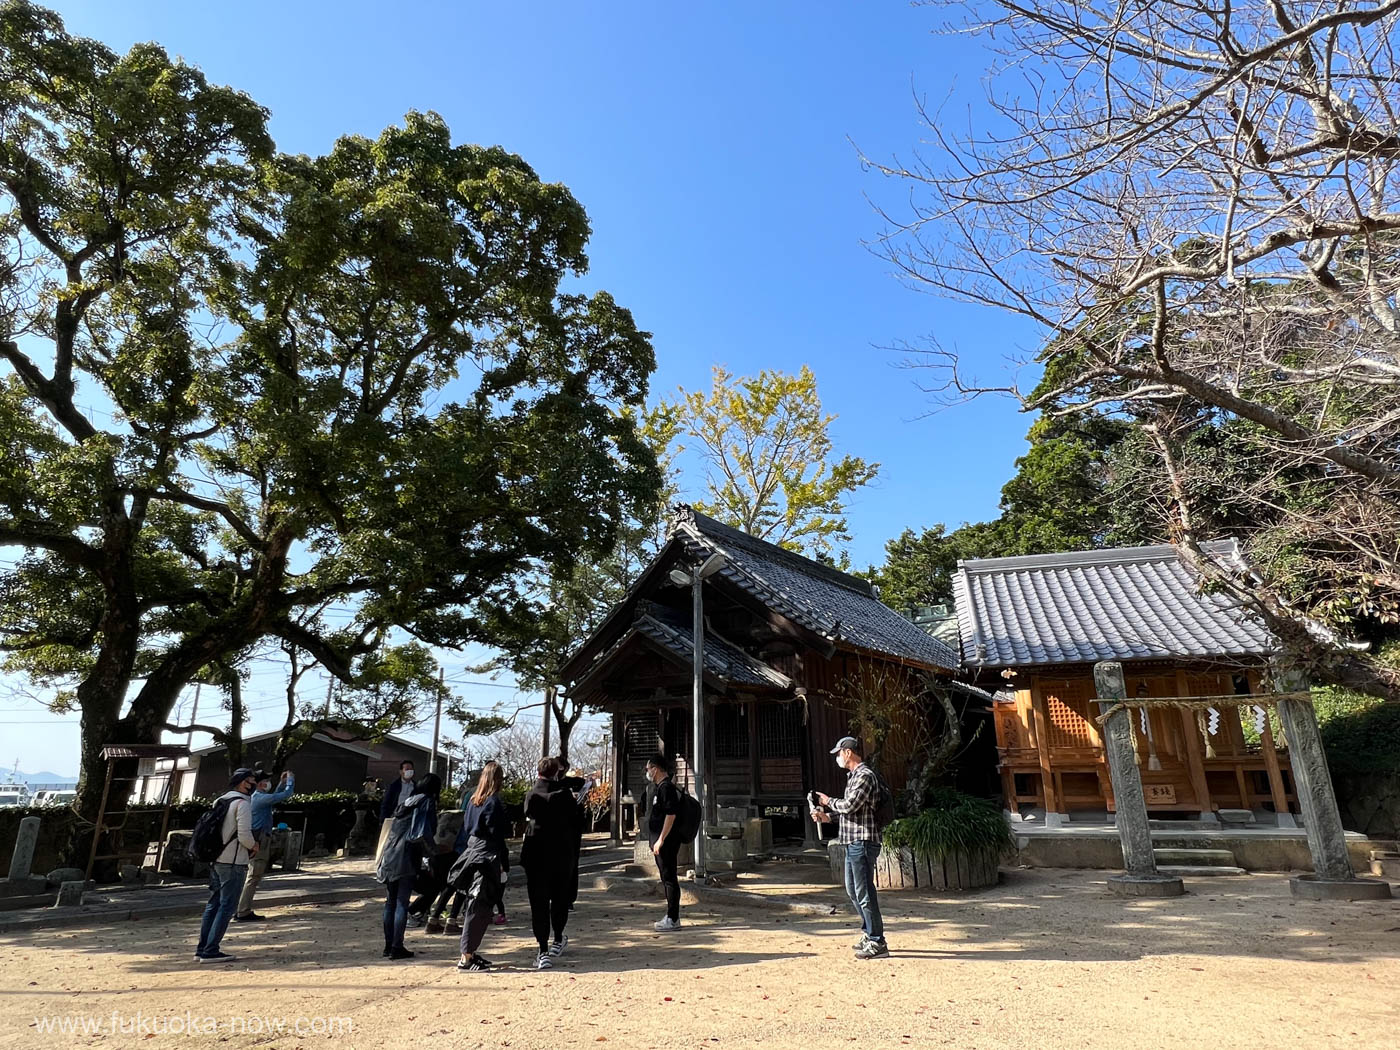 Hanakake shrine in Itoshima, 糸島の花掛神社